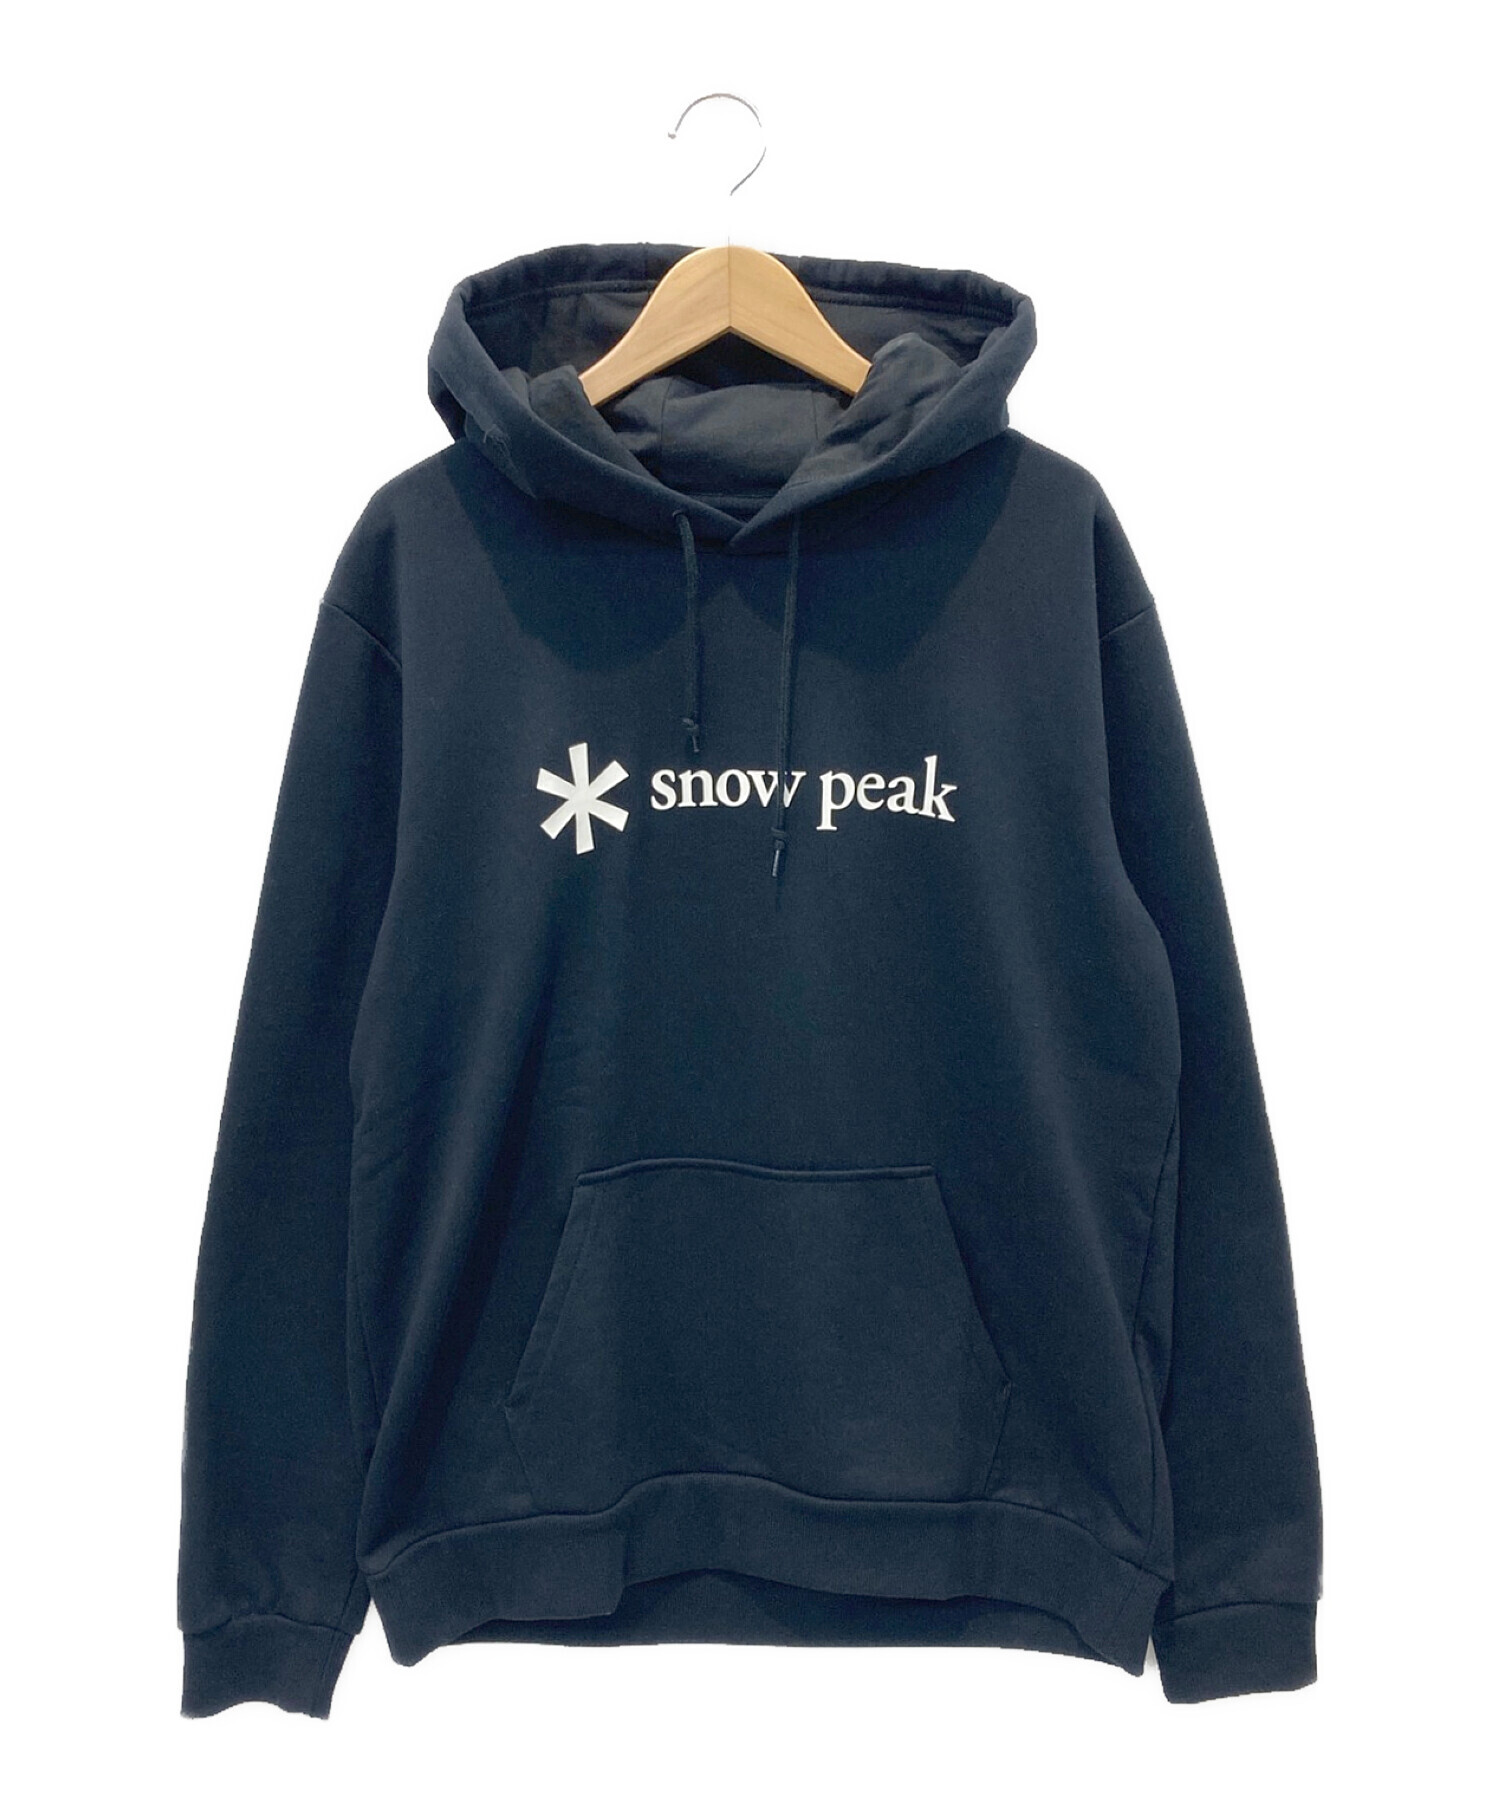 人気定番お得スノーピーク [used・試着] ☆ Printed Logo Sweat Pullover スウェットパーカー上下(Lサイズ)/セットアップ [良品]☆ Snow Peak スノーピーク